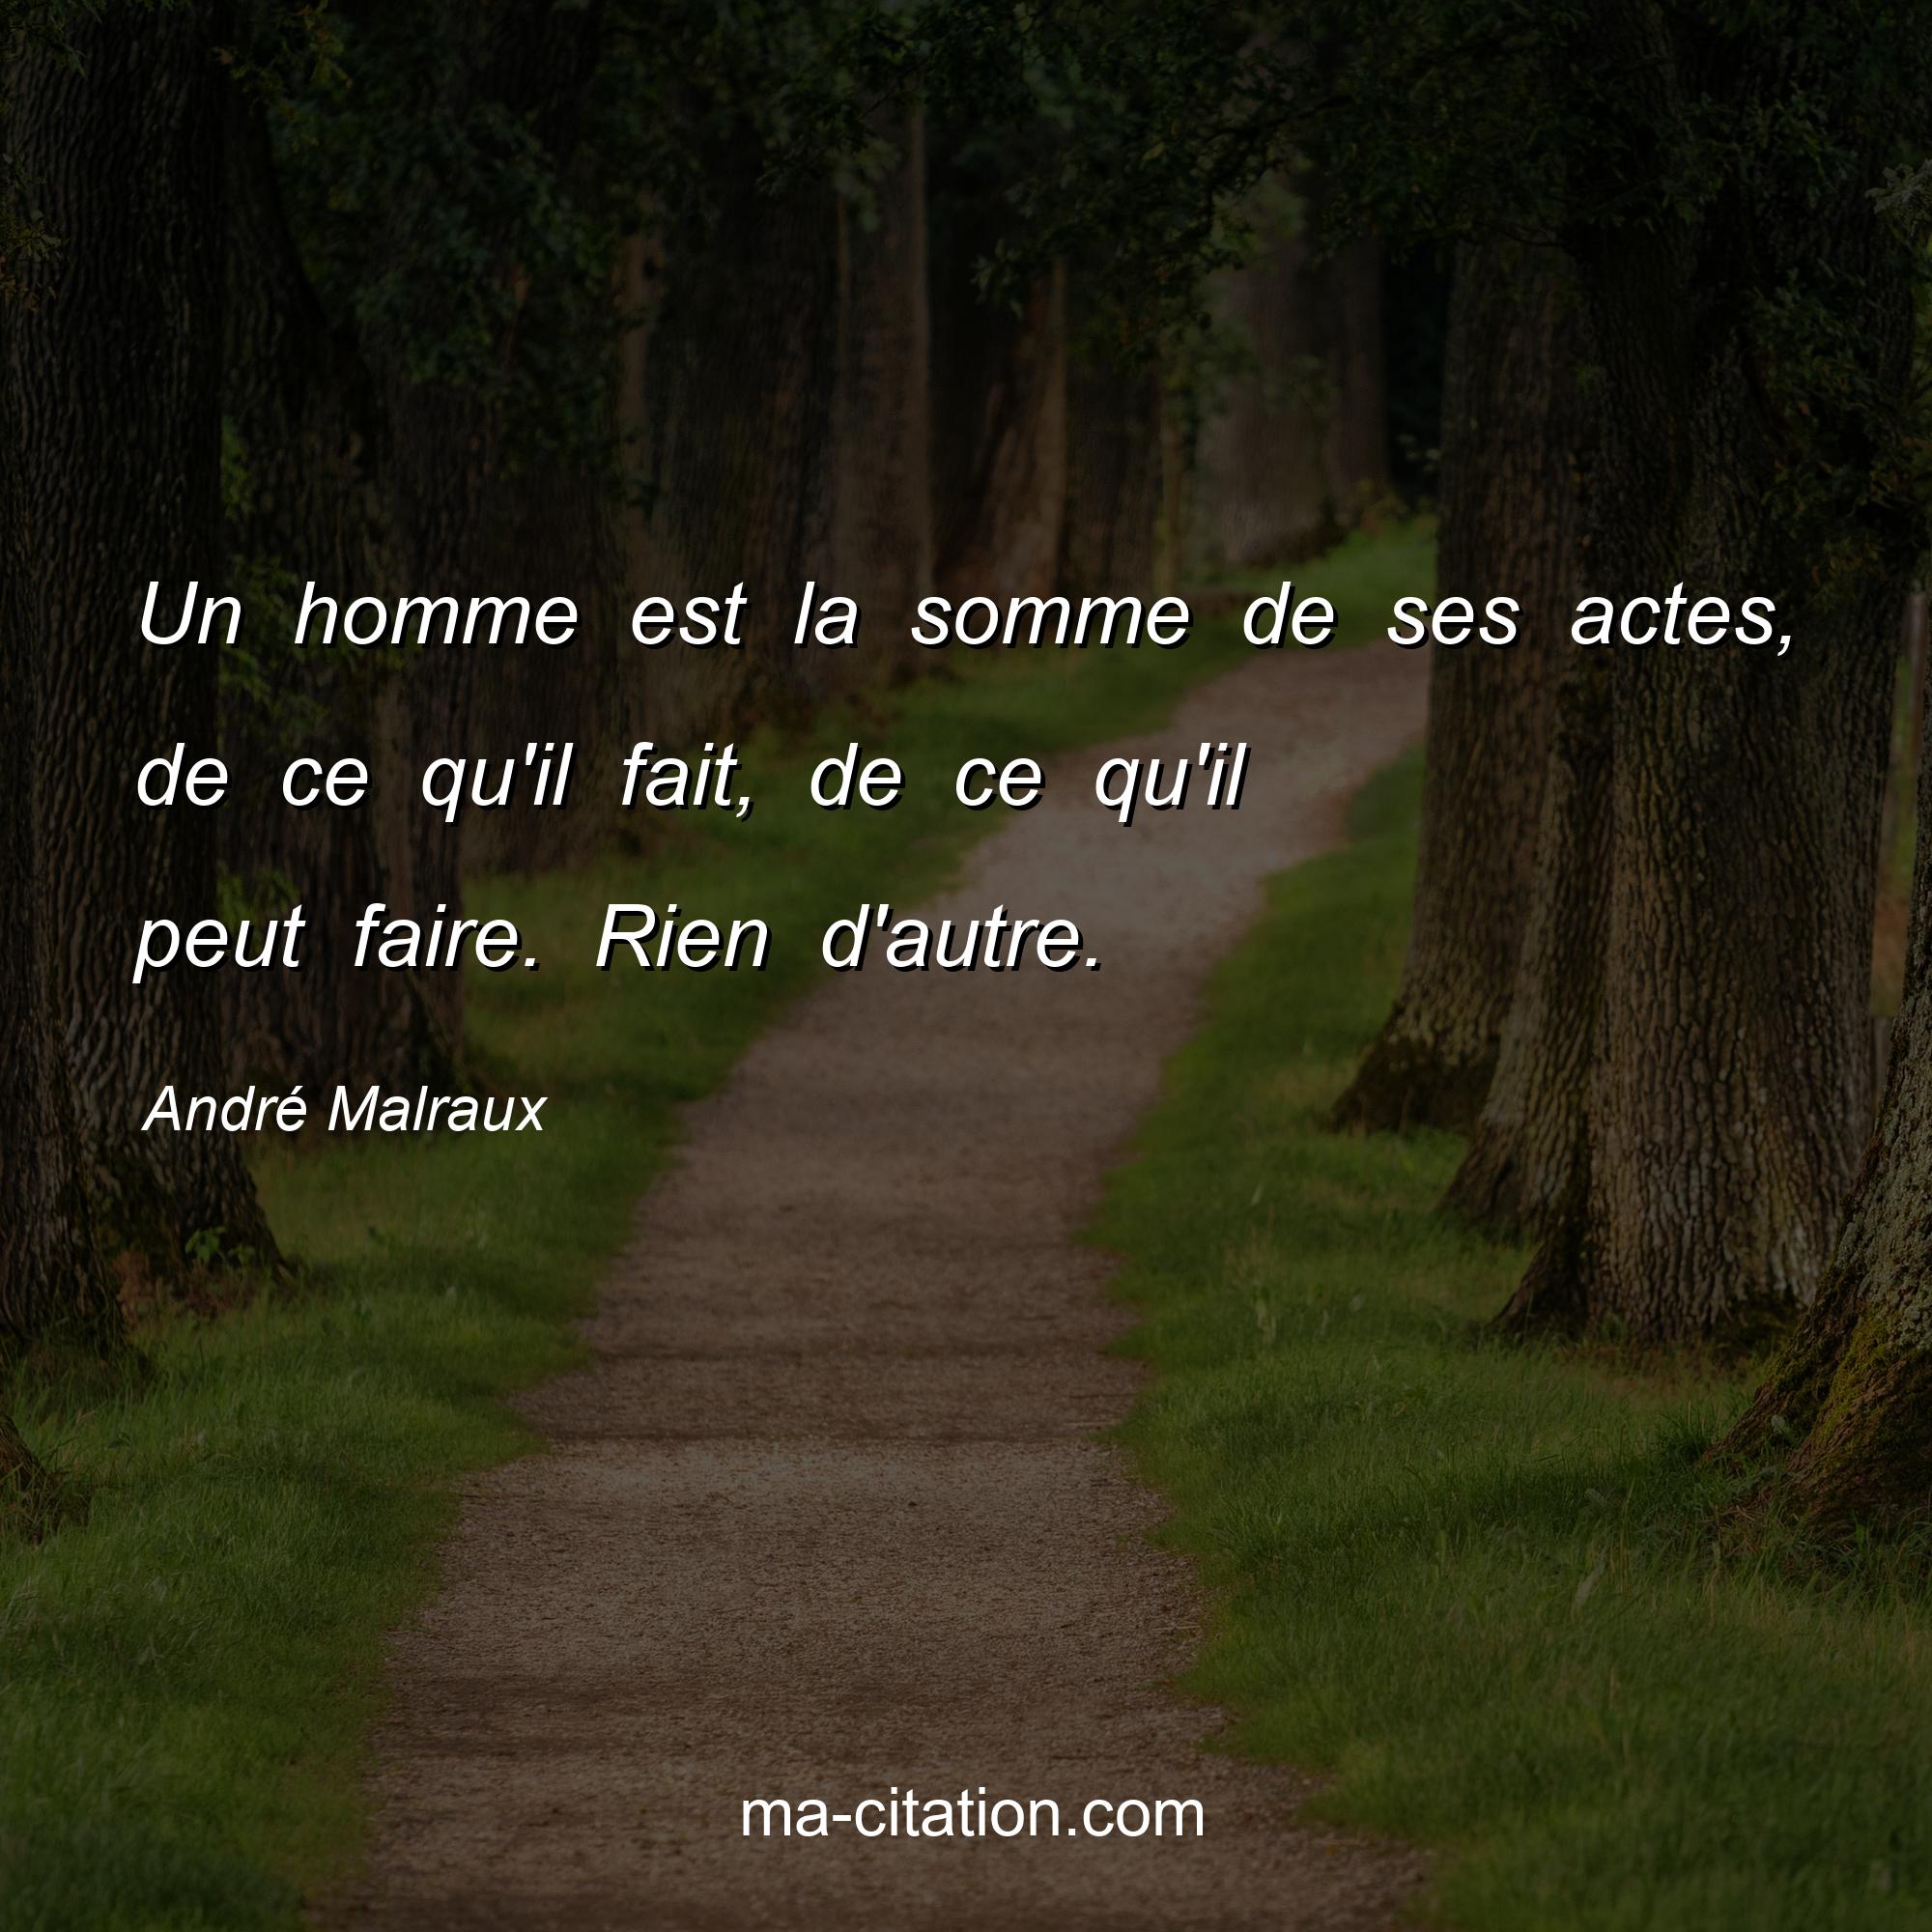 André Malraux : Un homme est la somme de ses actes, de ce qu'il fait, de ce qu'il peut faire. Rien d'autre.